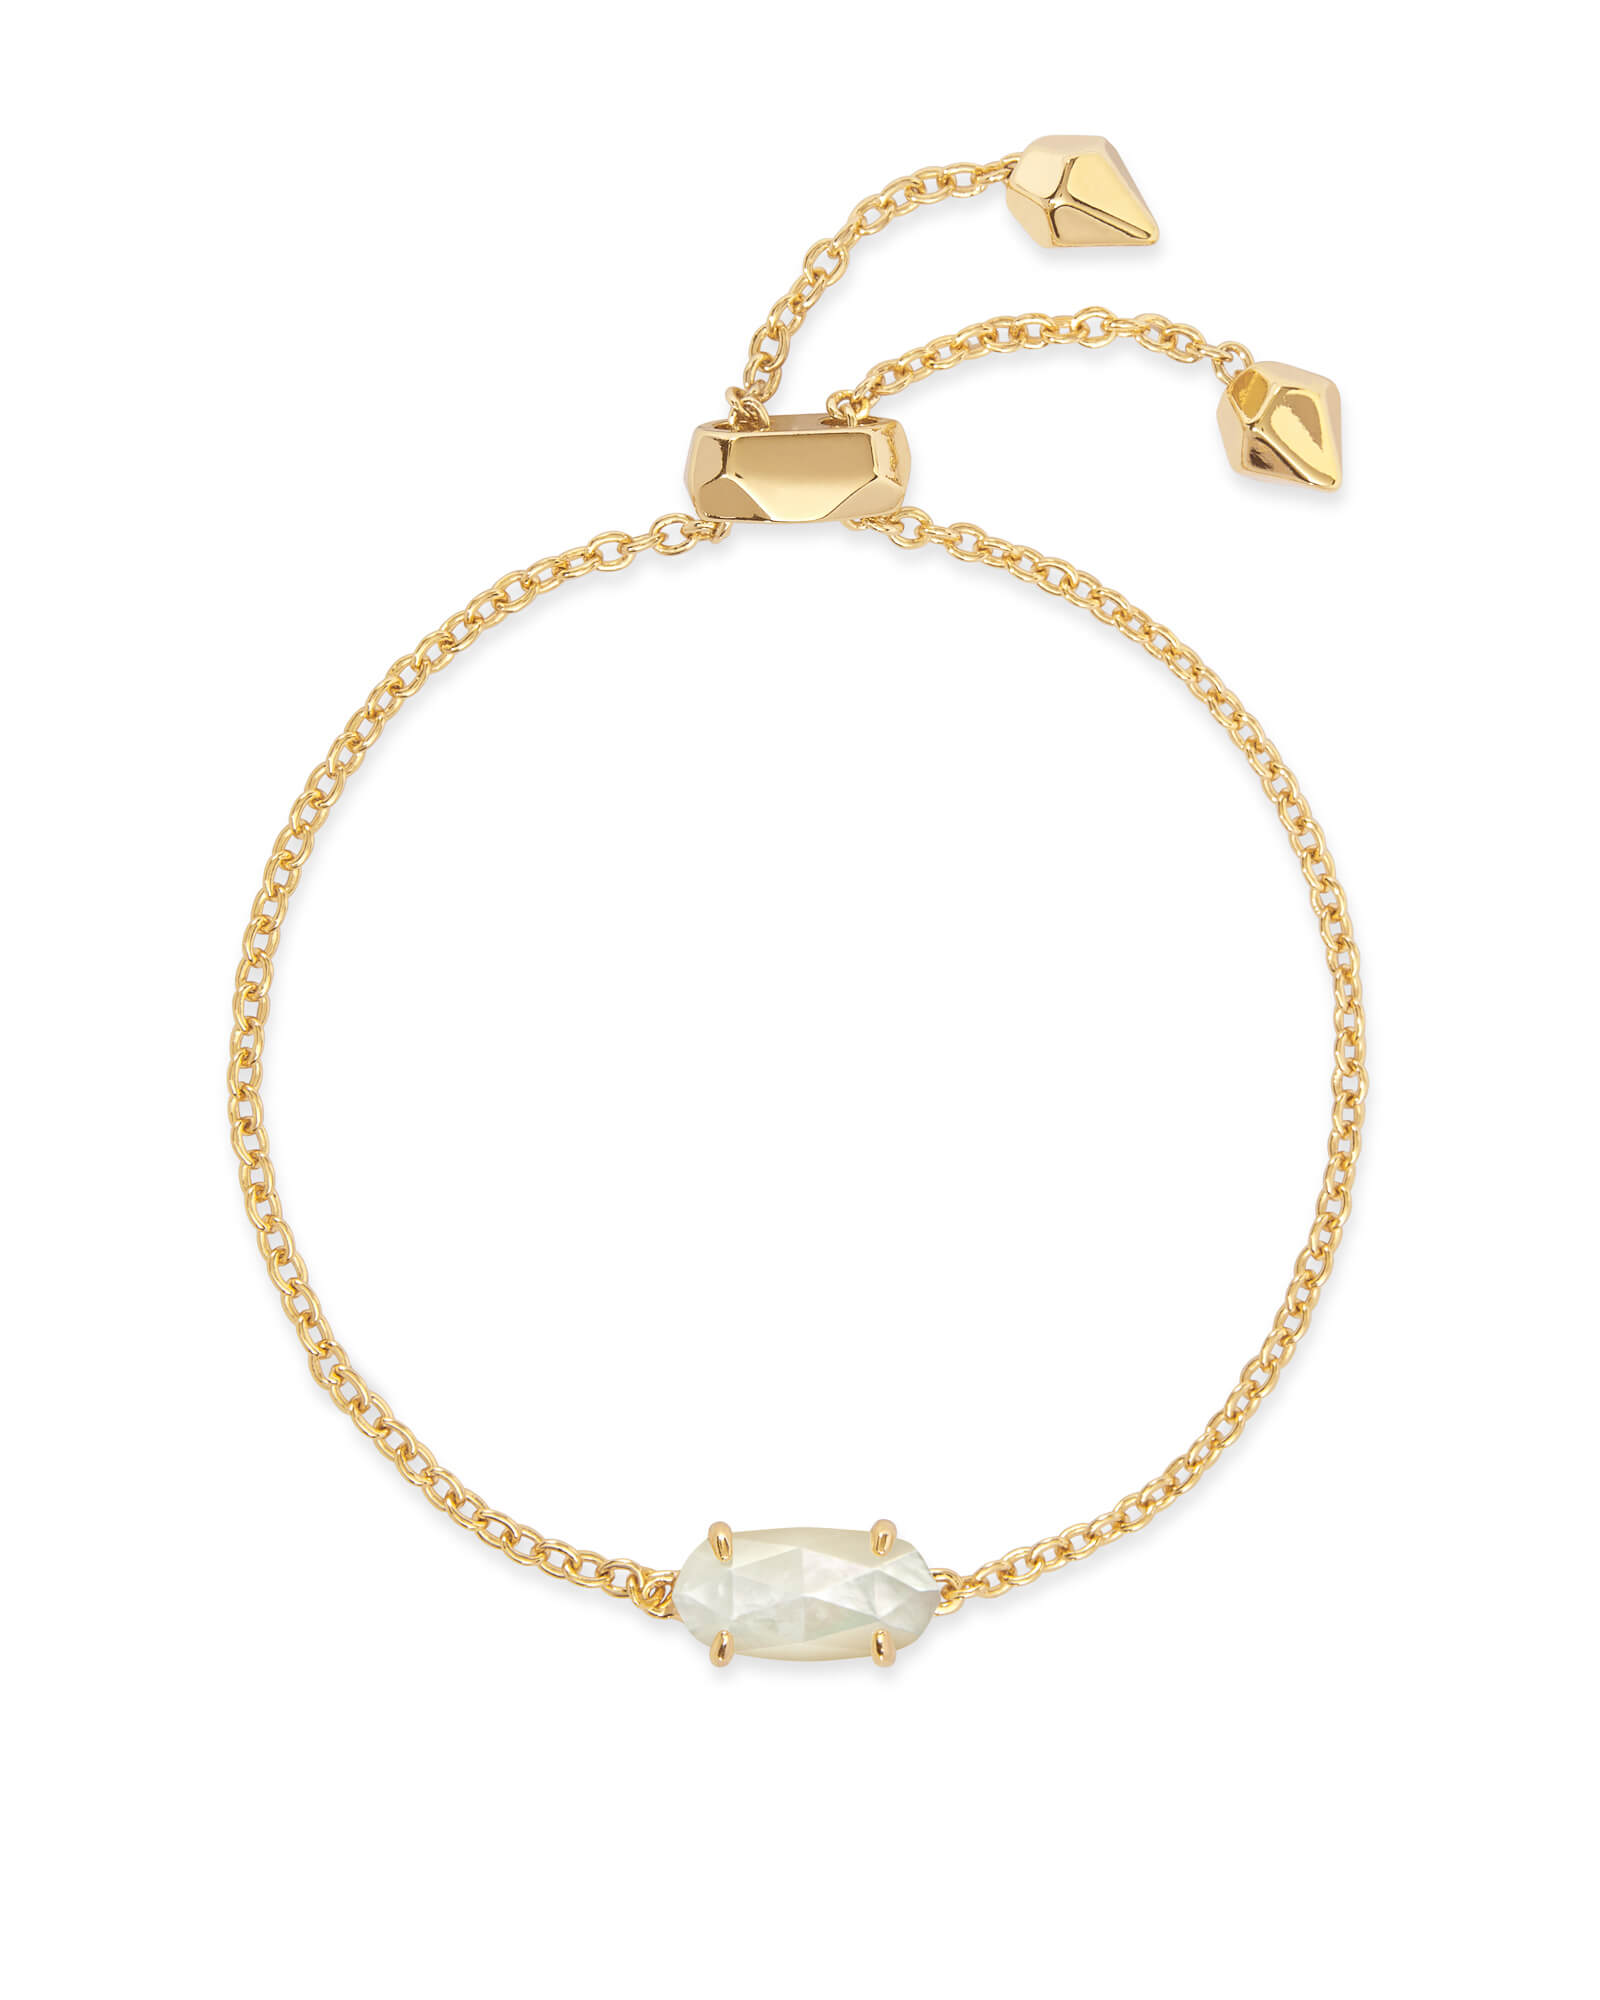 Everlyne Bracelet in Gold | KendraScott